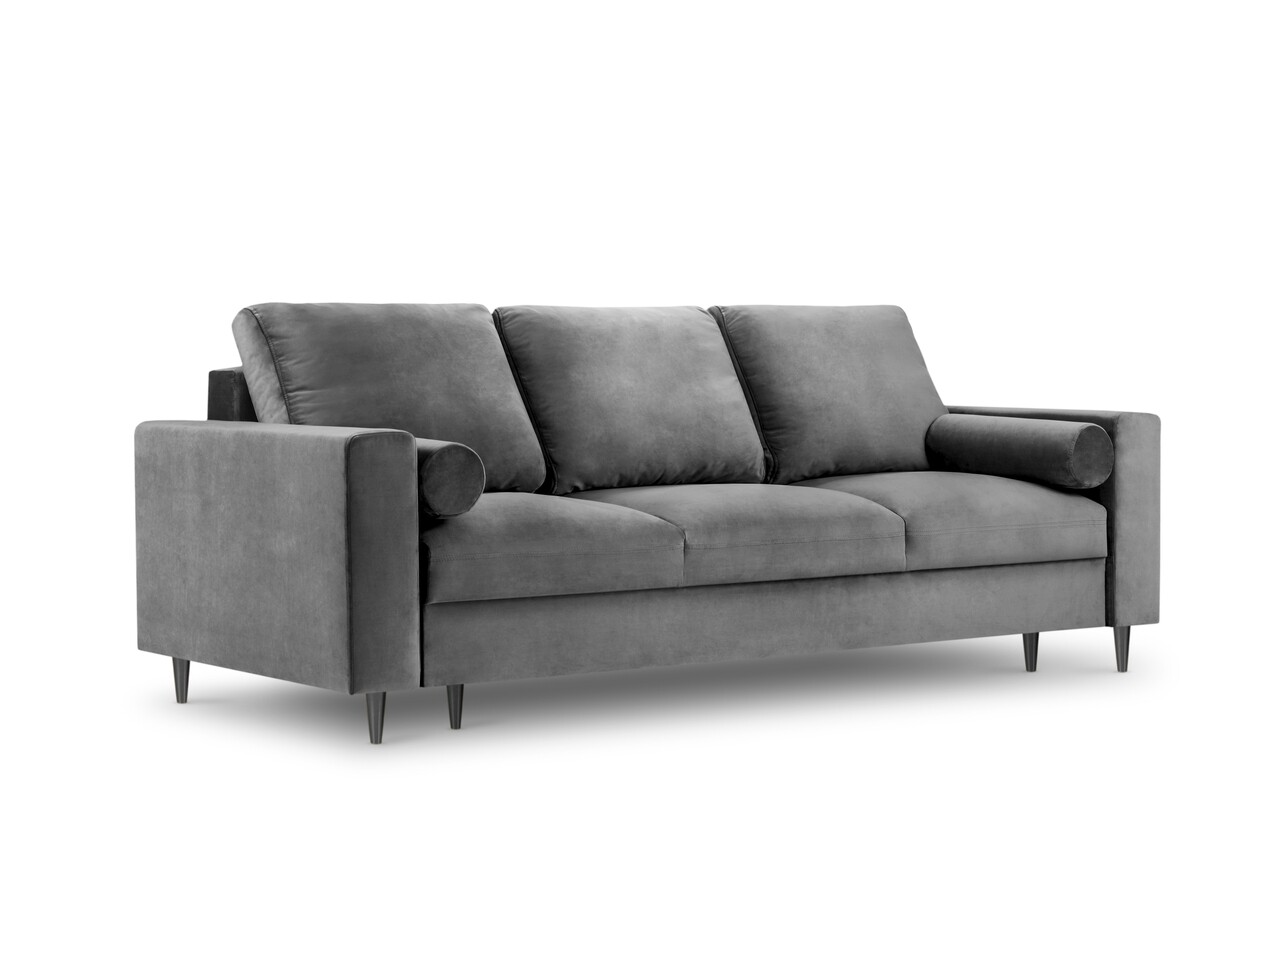 Kihúzható kanapé, Camellia, Mazzini Kanapék, 3 ülőhely, tárolódobozzal, 220x100x92 cm, bársony, világosszürke